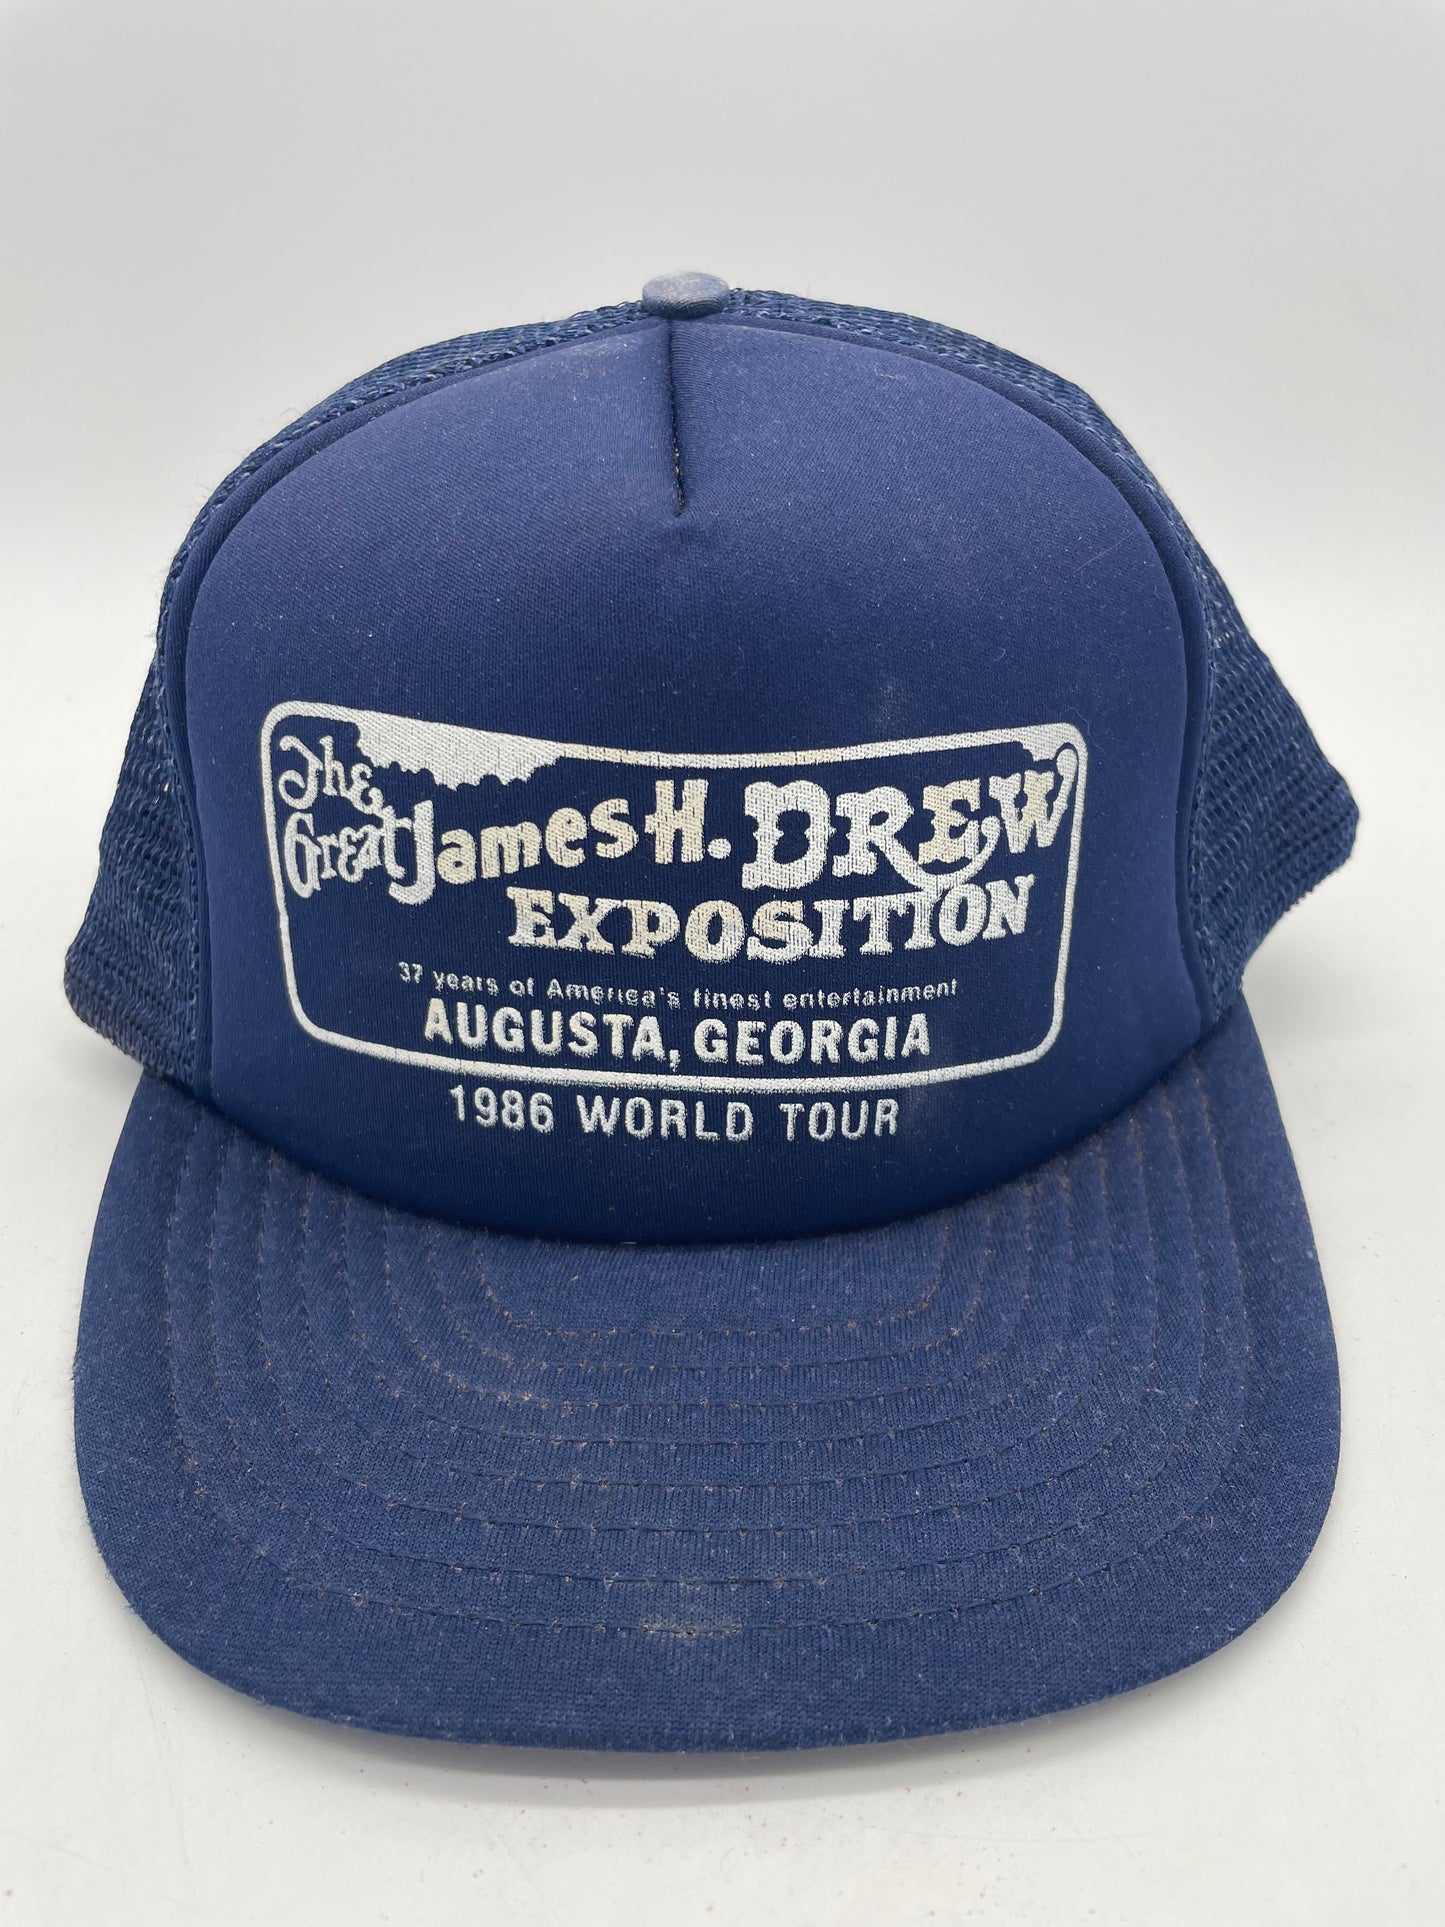 VTG The Great James H Drew Exposition Trucker Hat